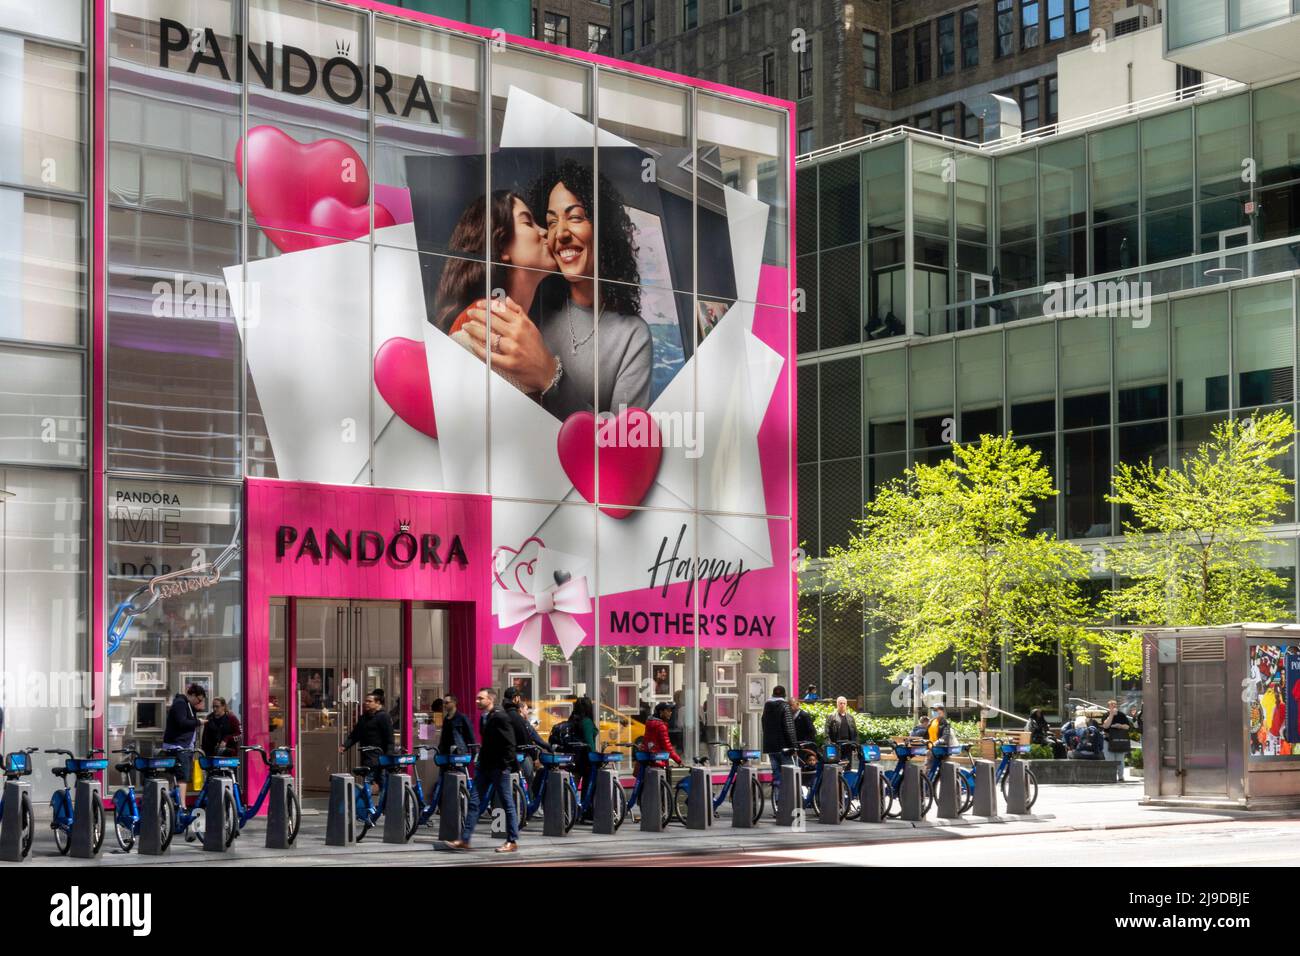 Pandora ist ein Juweliergeschäft in der Nähe des Times Square, NYC, USA,  2022 Stockfotografie - Alamy